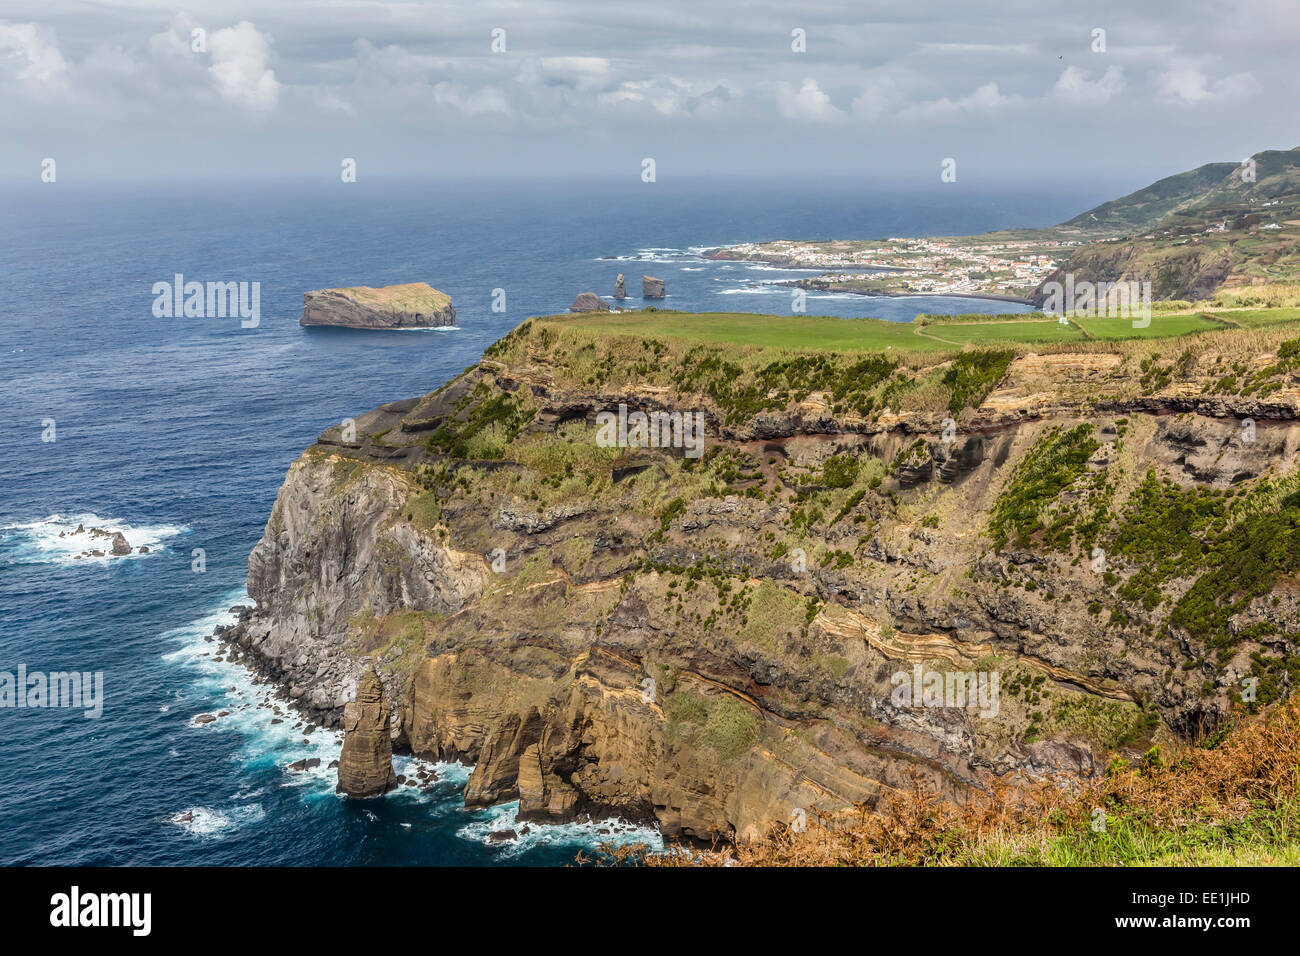 La costa frastagliata del capitale delle Azzorre Isola di Sao Miguel, Azzorre, Portogallo, Atlantico, Europa Foto Stock